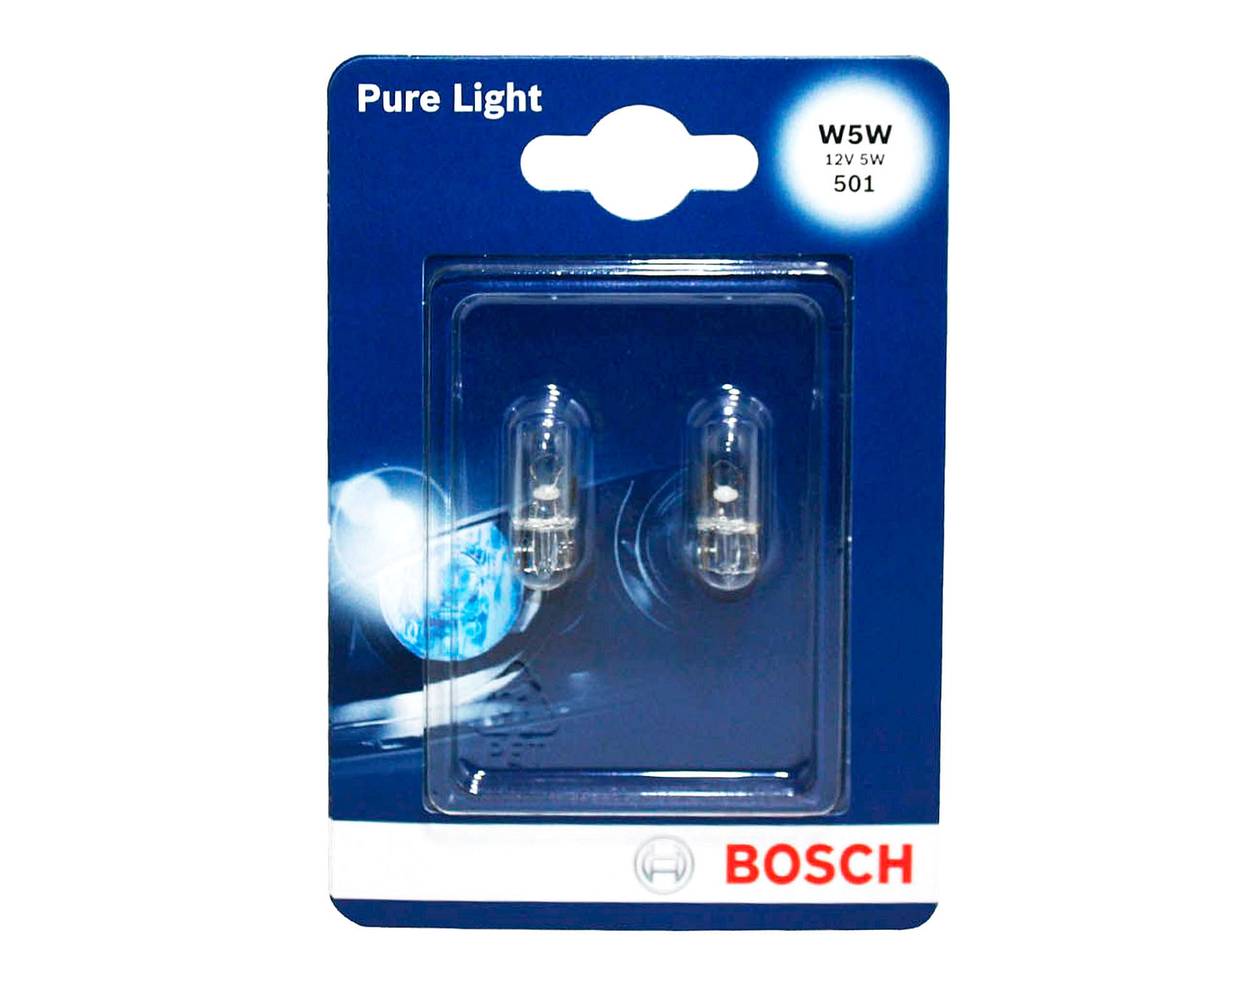 Bosch ampolleta 5w w5w 501 pure light (1 ampolleta)